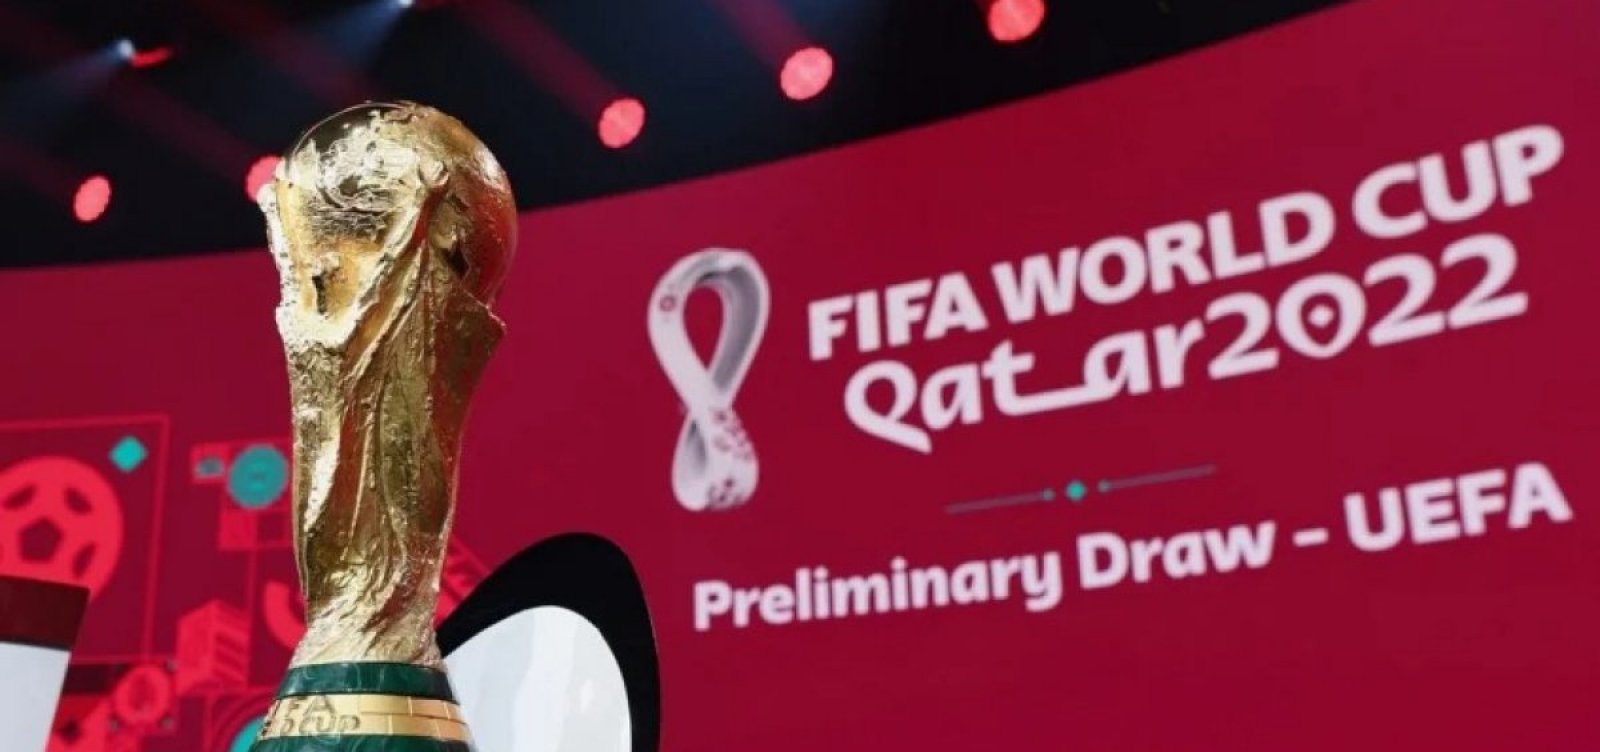 Fifa anuncia as cidades que serão sedes da Copa do Mundo de 2026